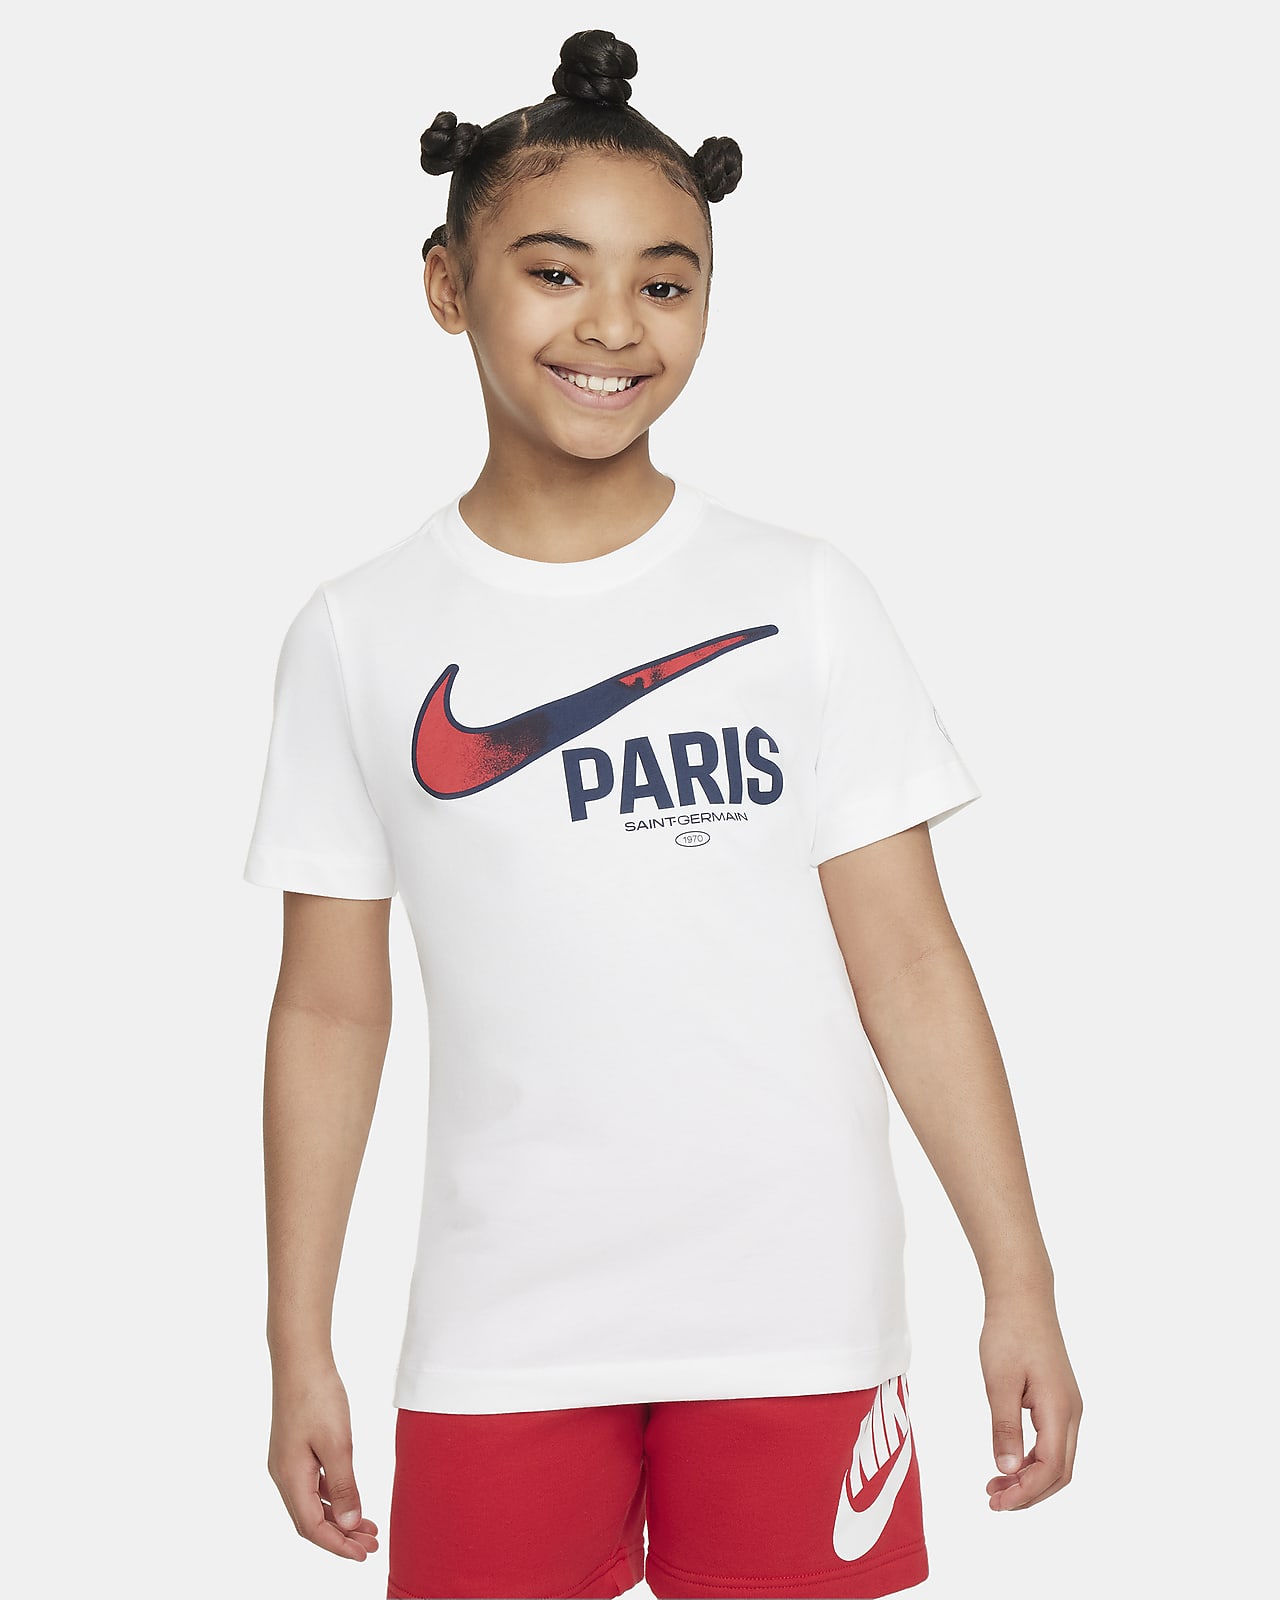 Ποδοσφαιρικό T-Shirt Nike Παρί Σεν Ζερμέν Swoosh για μεγάλα παιδιά